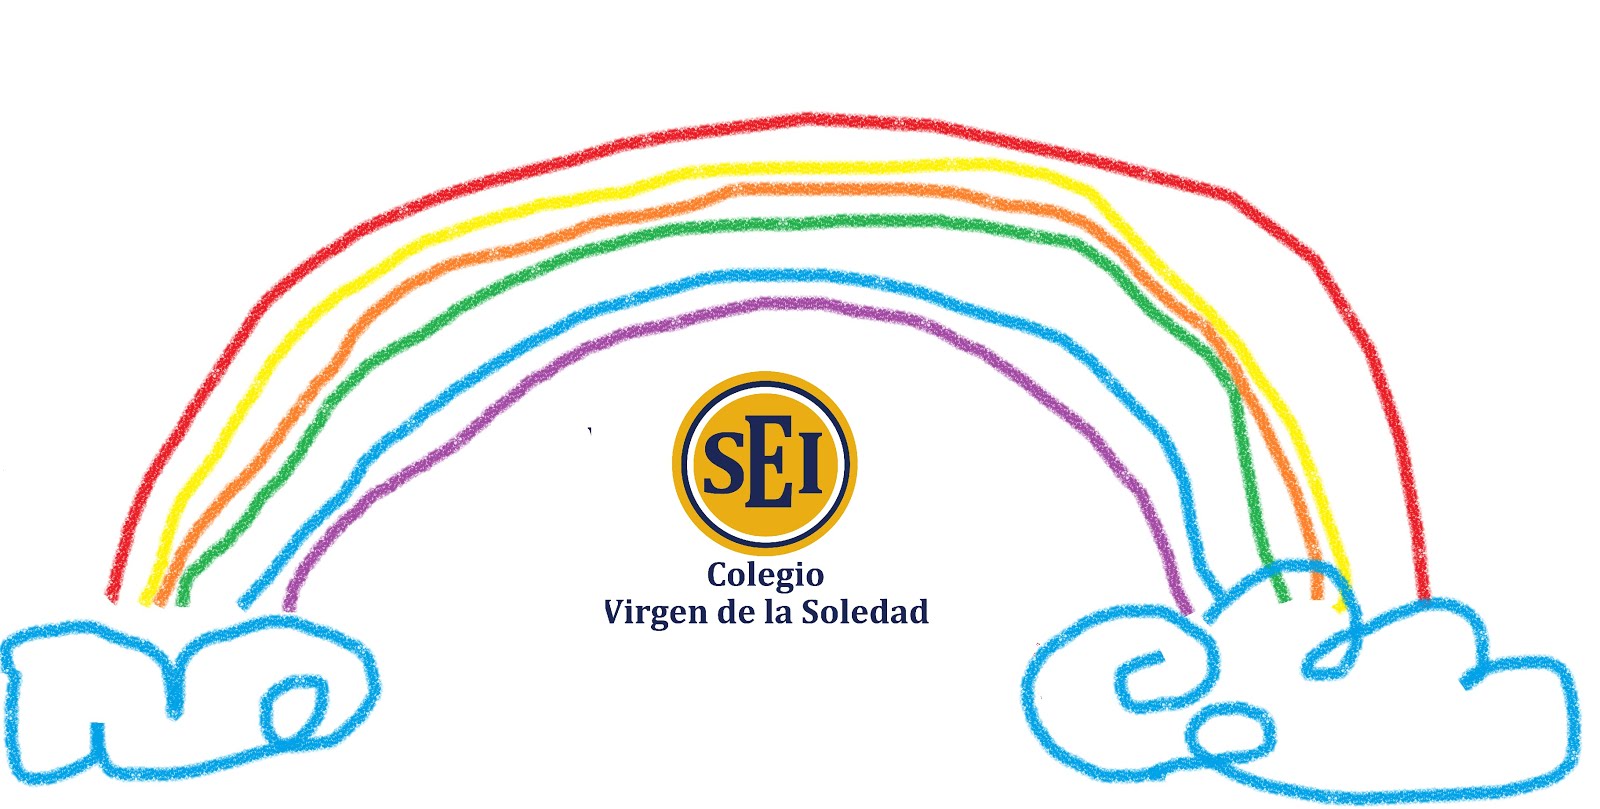 Educación Infantil colegio SEI Virgen de la Soledad